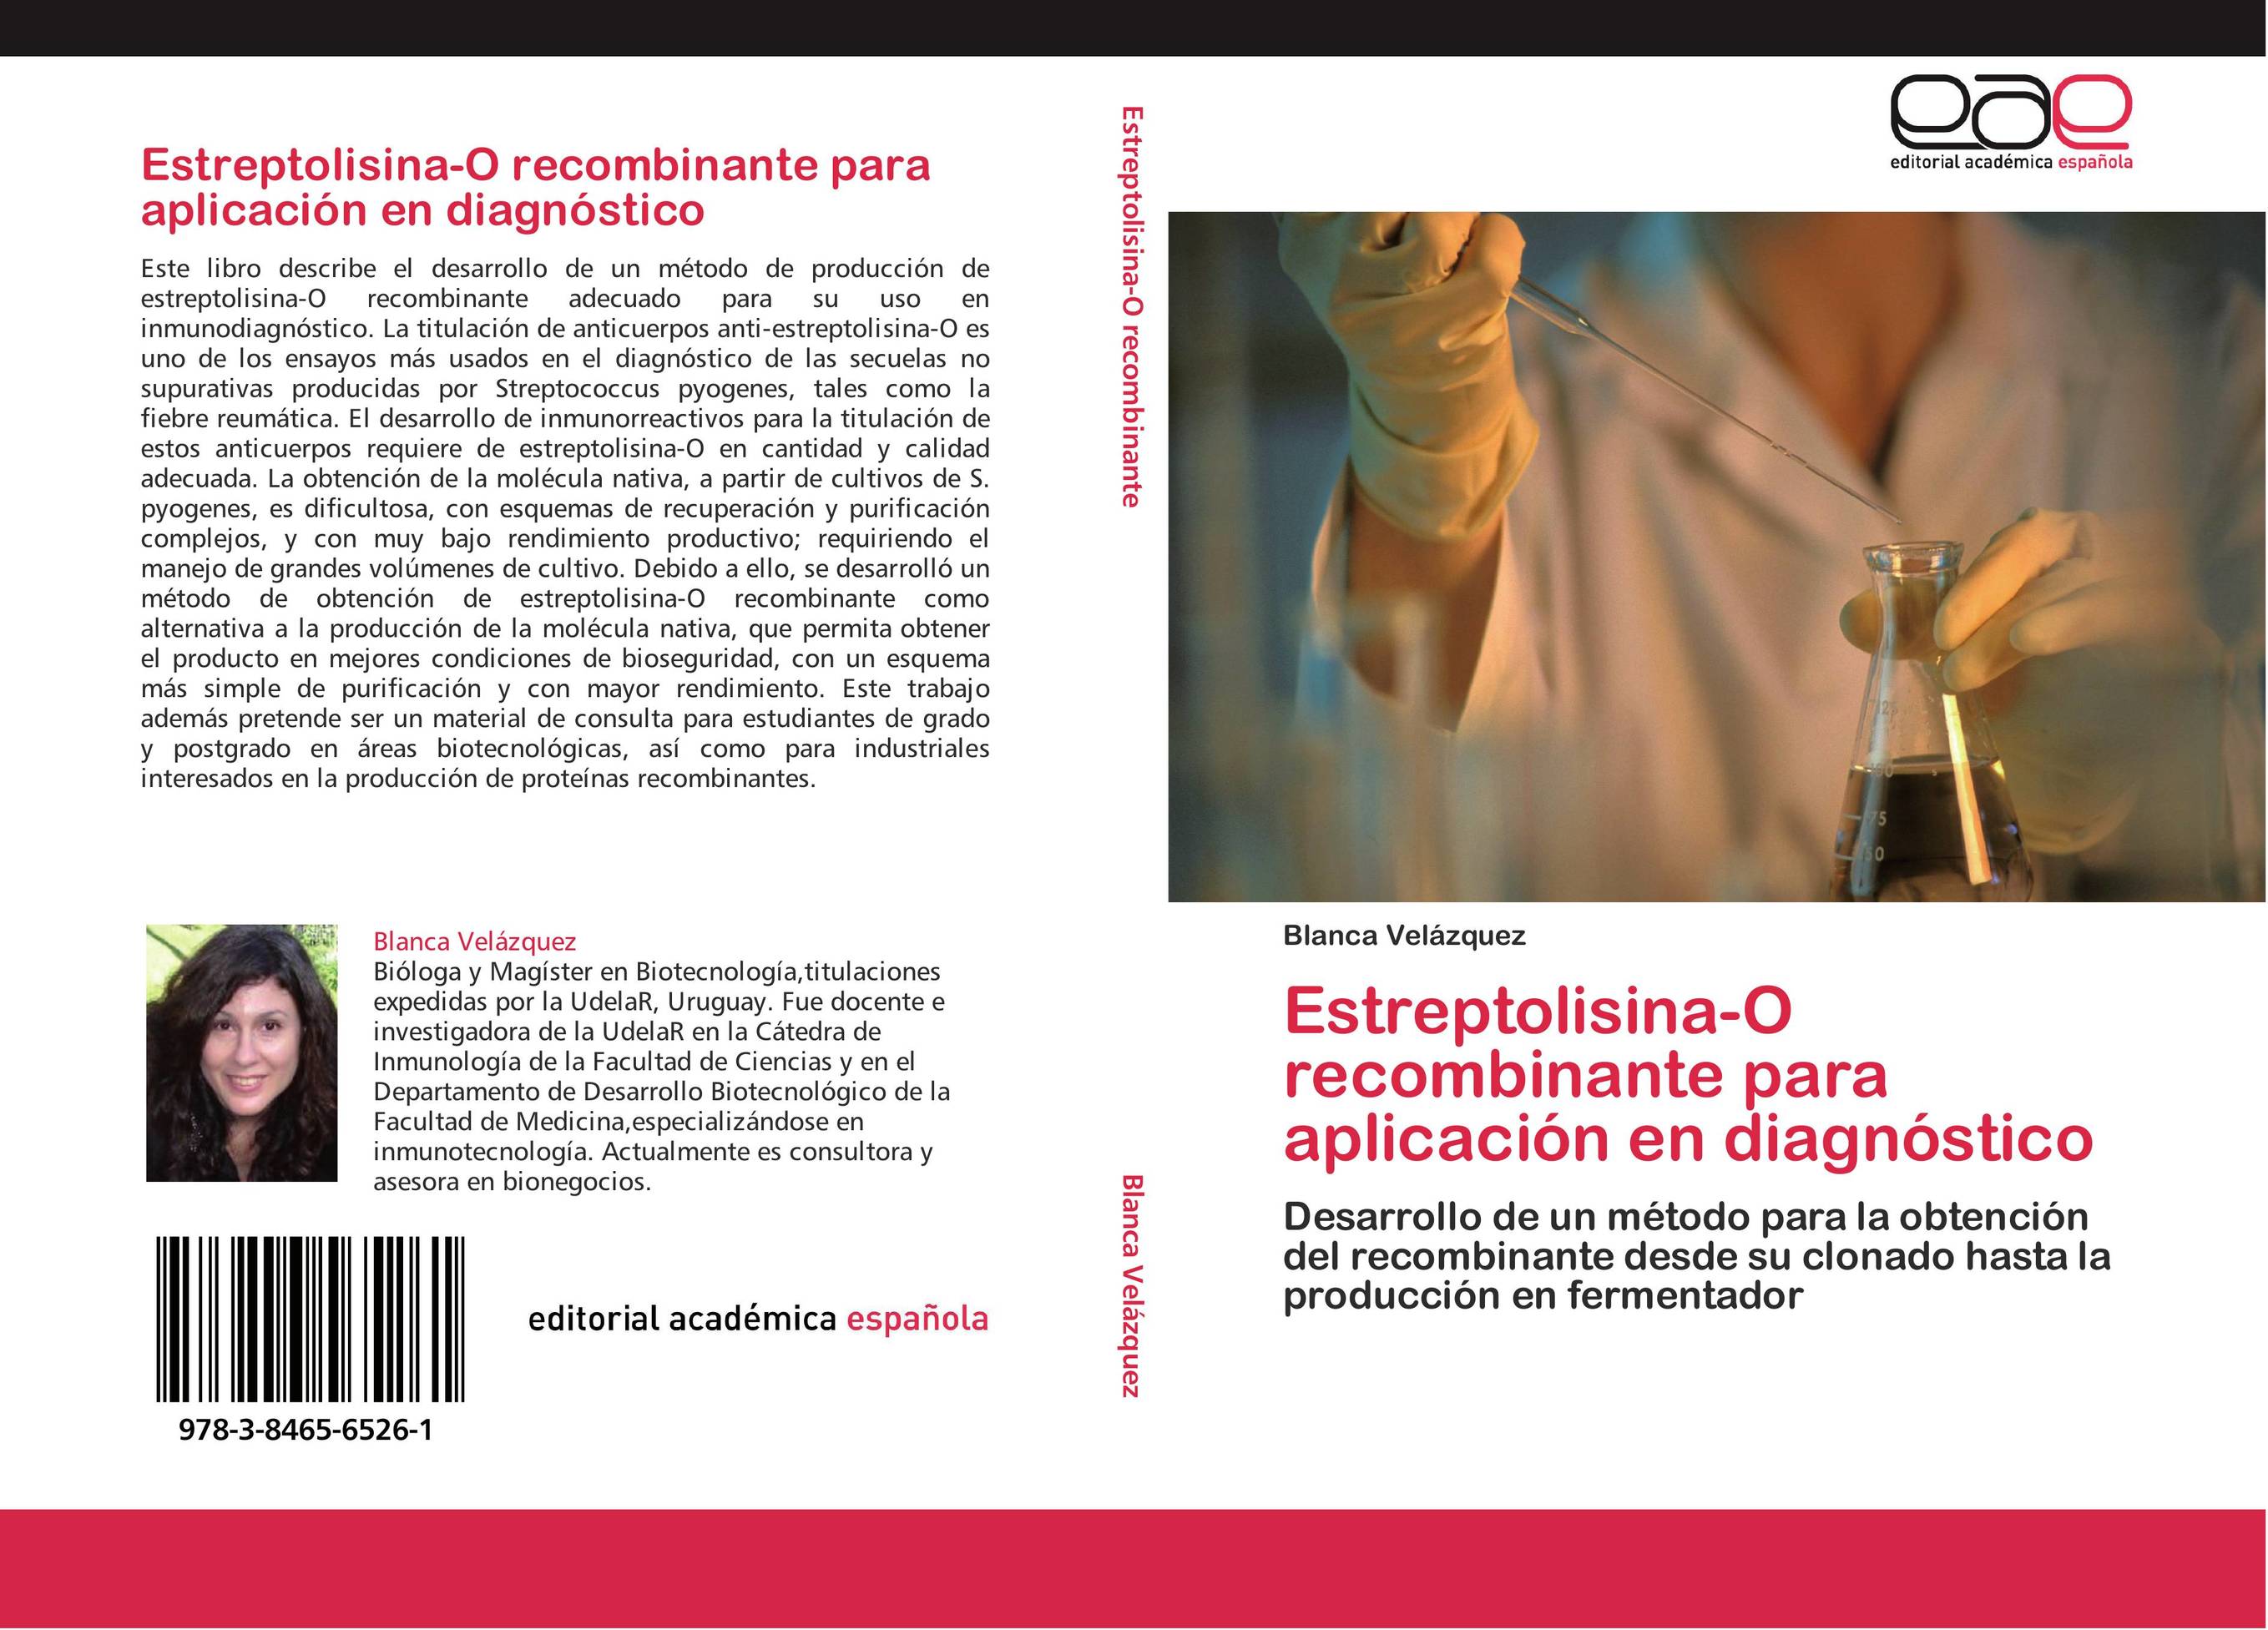 Estreptolisina-O recombinante para aplicación en diagnóstico